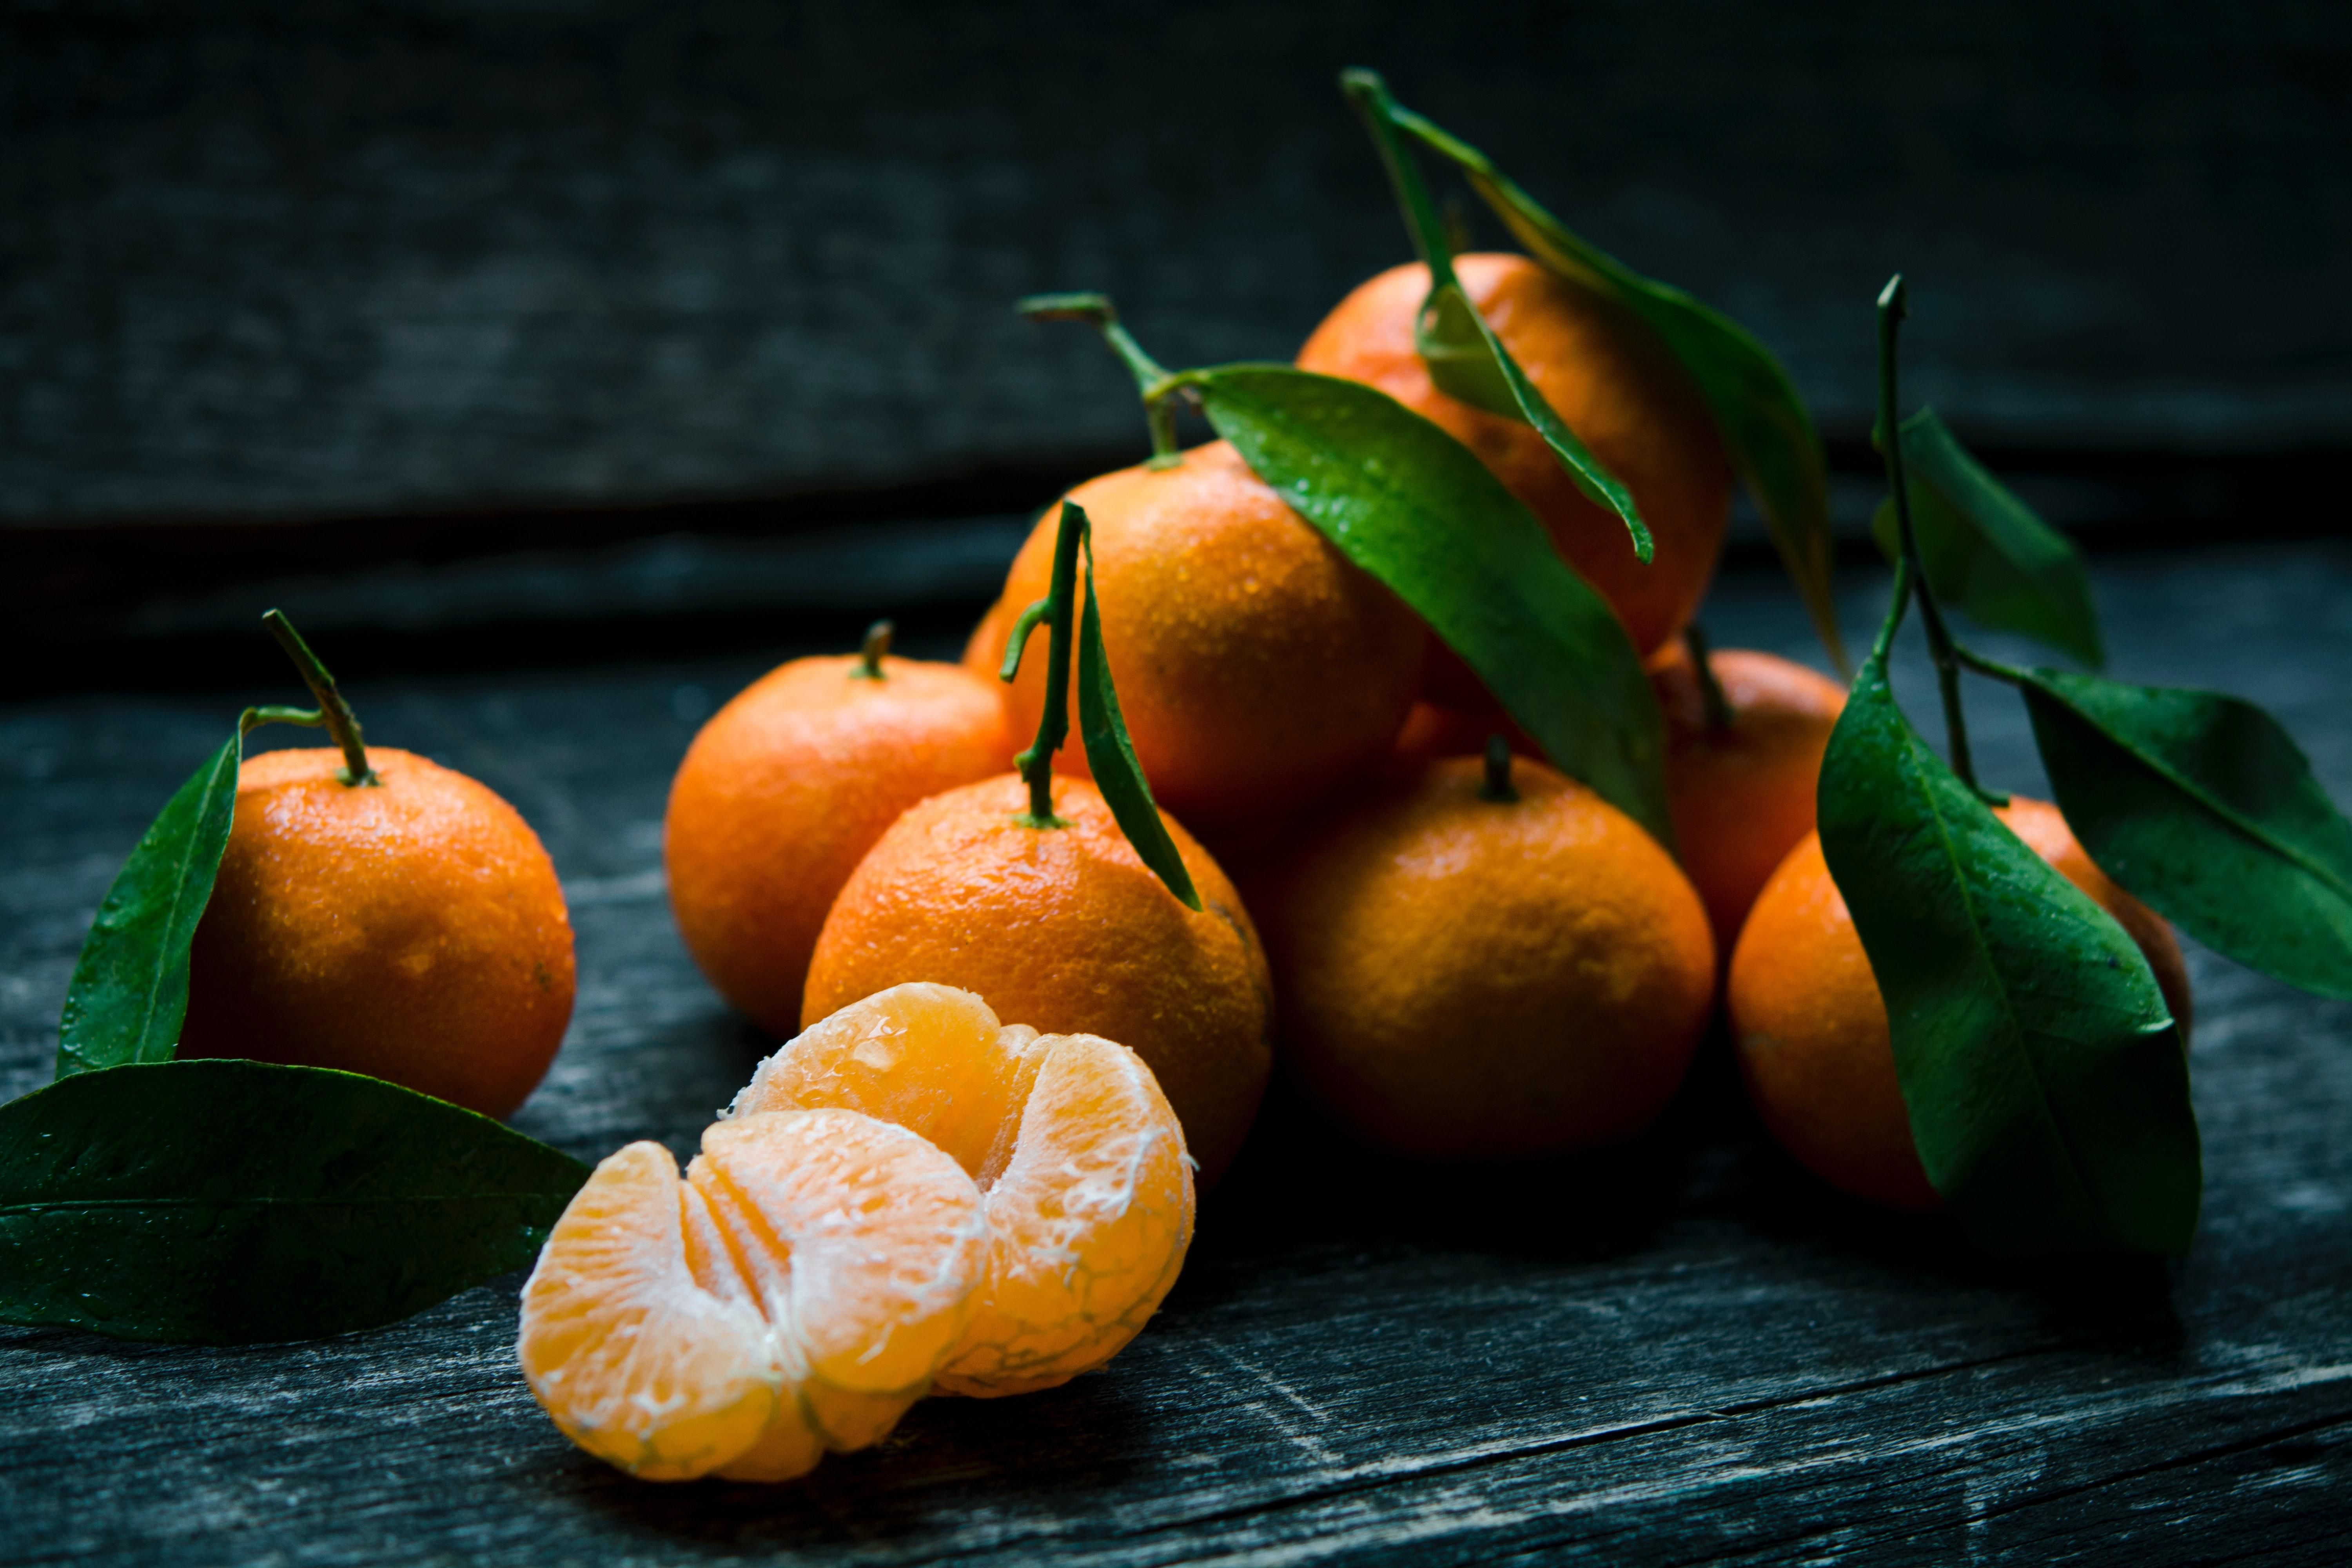 Як відрізнити солодкі мандарини від кислих у супермаркеті: перевіряємо на свіжість - Ідеї